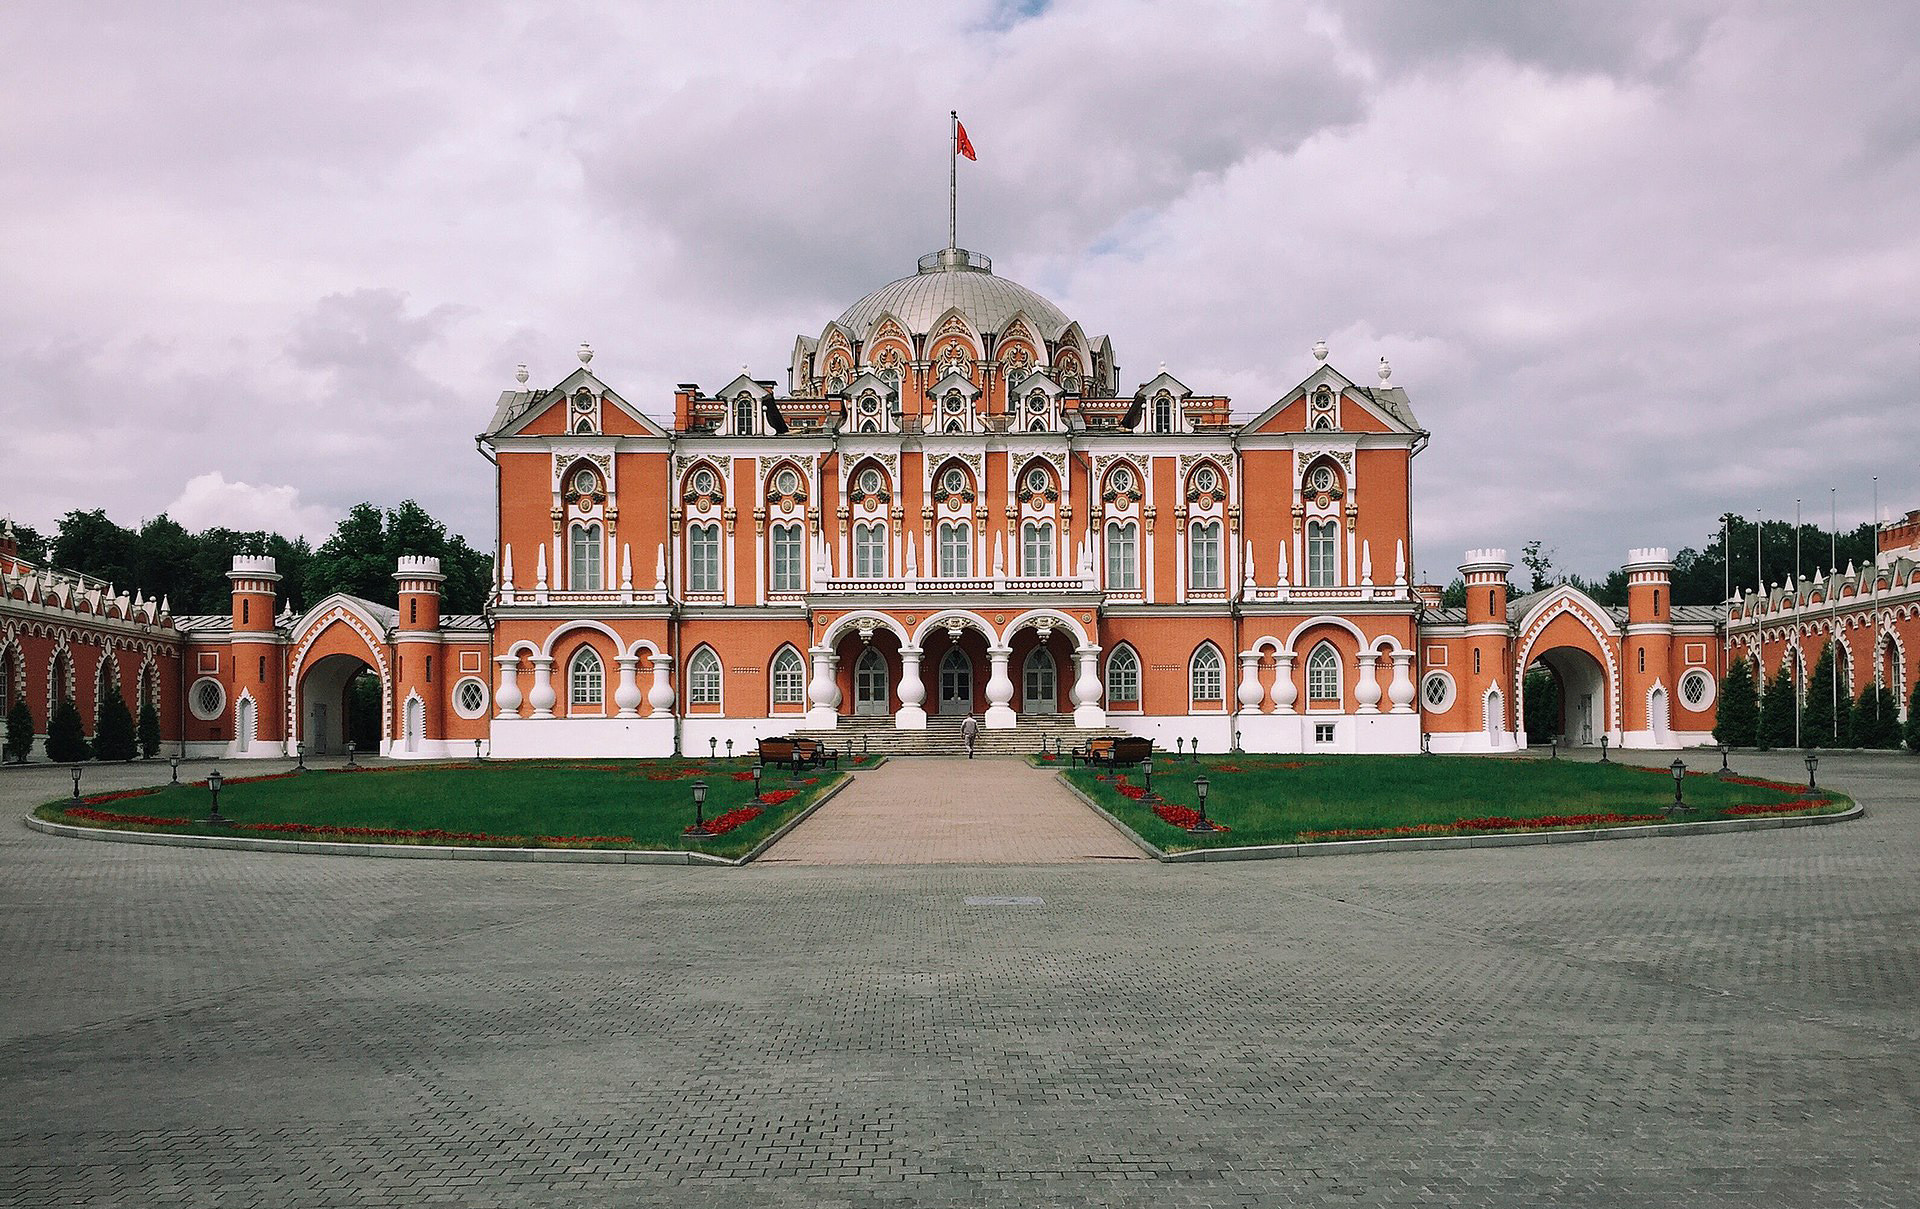 The Petrovsky stopover palace